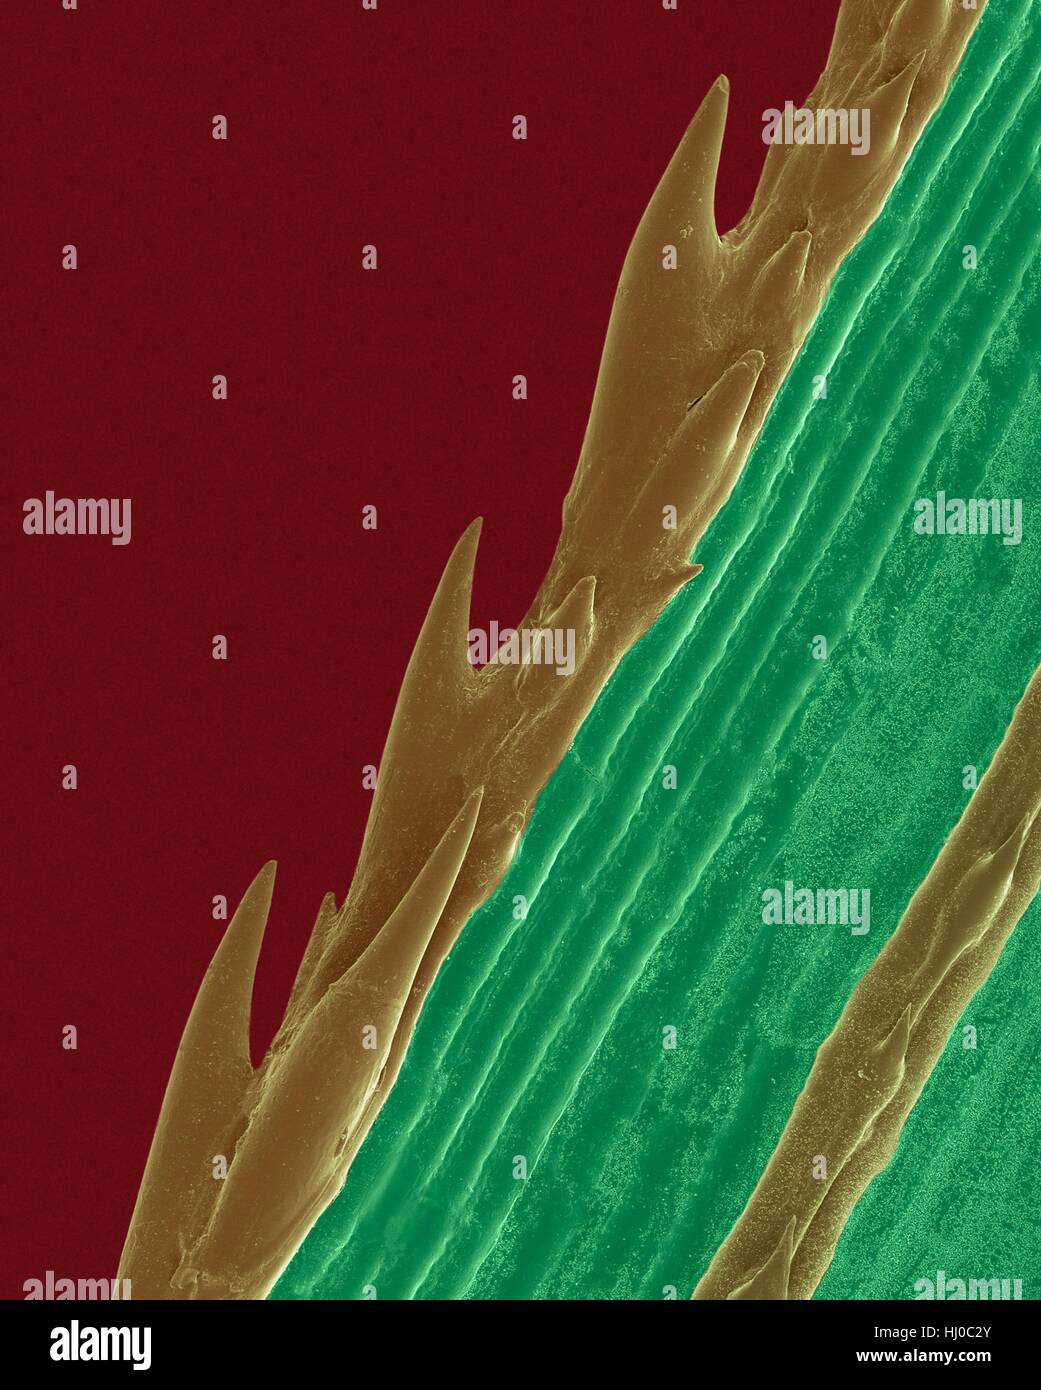 Ein Grashalm mit Wellenschliff (Paspalum sp), farbige scanning Electron-Schliffbild (SEM). Pflanzen entwickeln spezialisierte chemische Merkmale natürliche Verteidigung gegen Belastungen in ihrer Umgebung. Die scharfe Kante der Sägezahn von Grashalm schützt vor Fraßfeinden. Paspalum ist Stockfoto